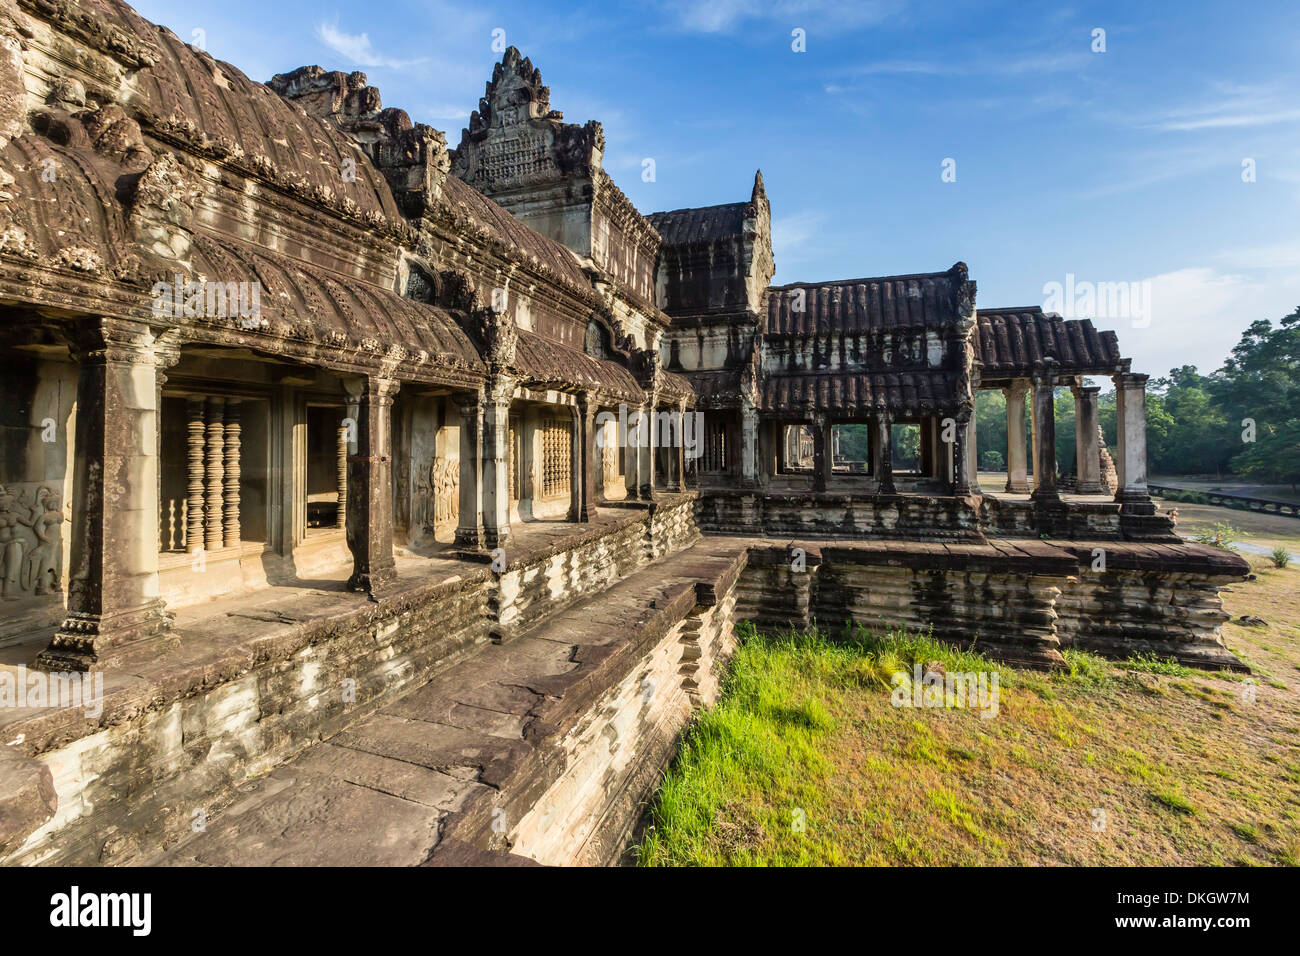 Terrasse surélevée à Angkor Wat, Angkor, Site du patrimoine mondial de l'UNESCO, la Province de Siem Reap, Cambodge, Indochine, Asie du Sud, Asie Banque D'Images